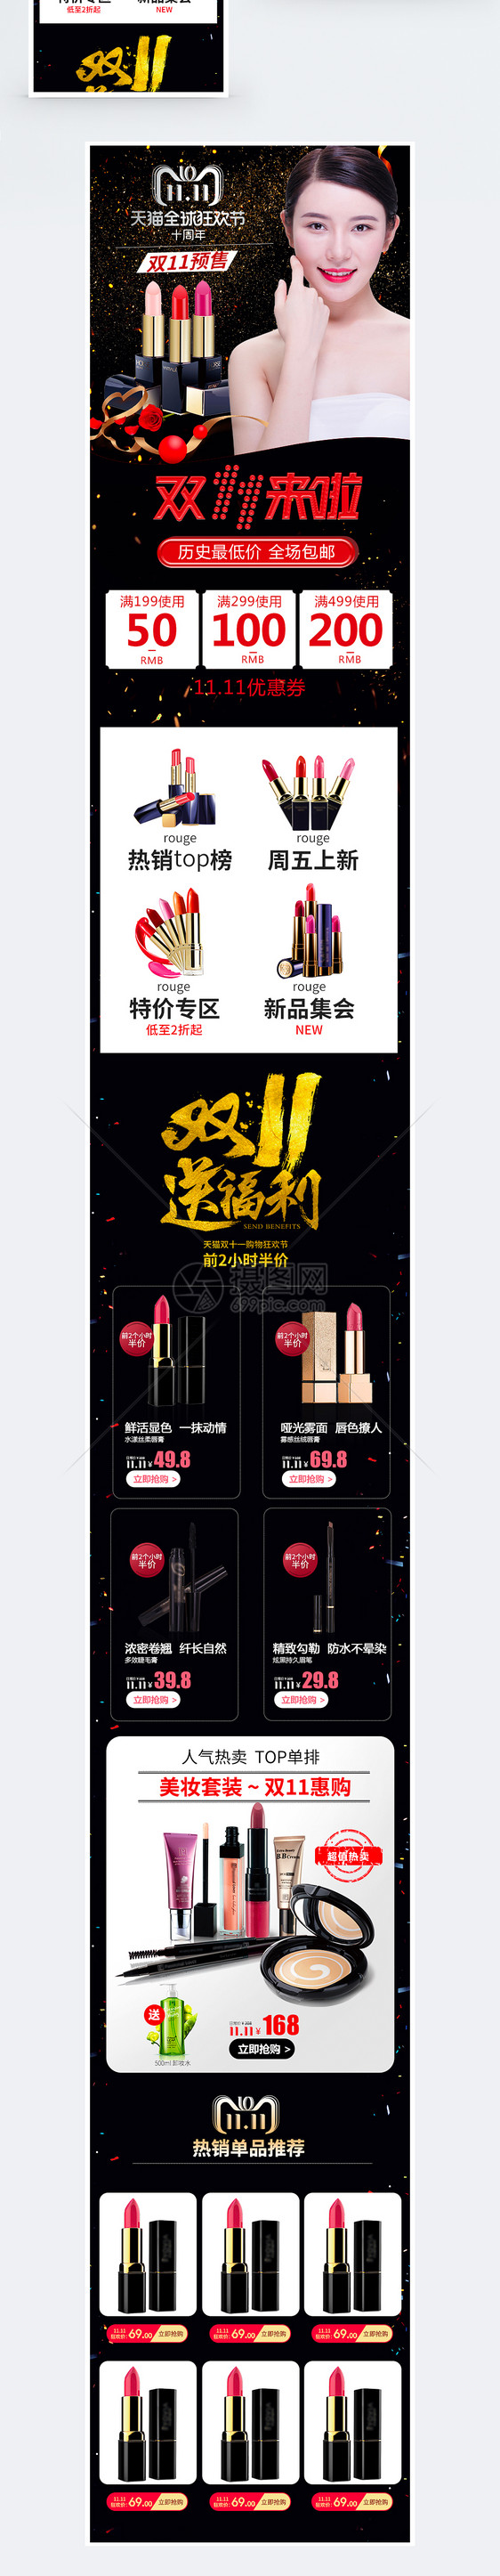 双11化妆品促销淘宝手机端模板图片